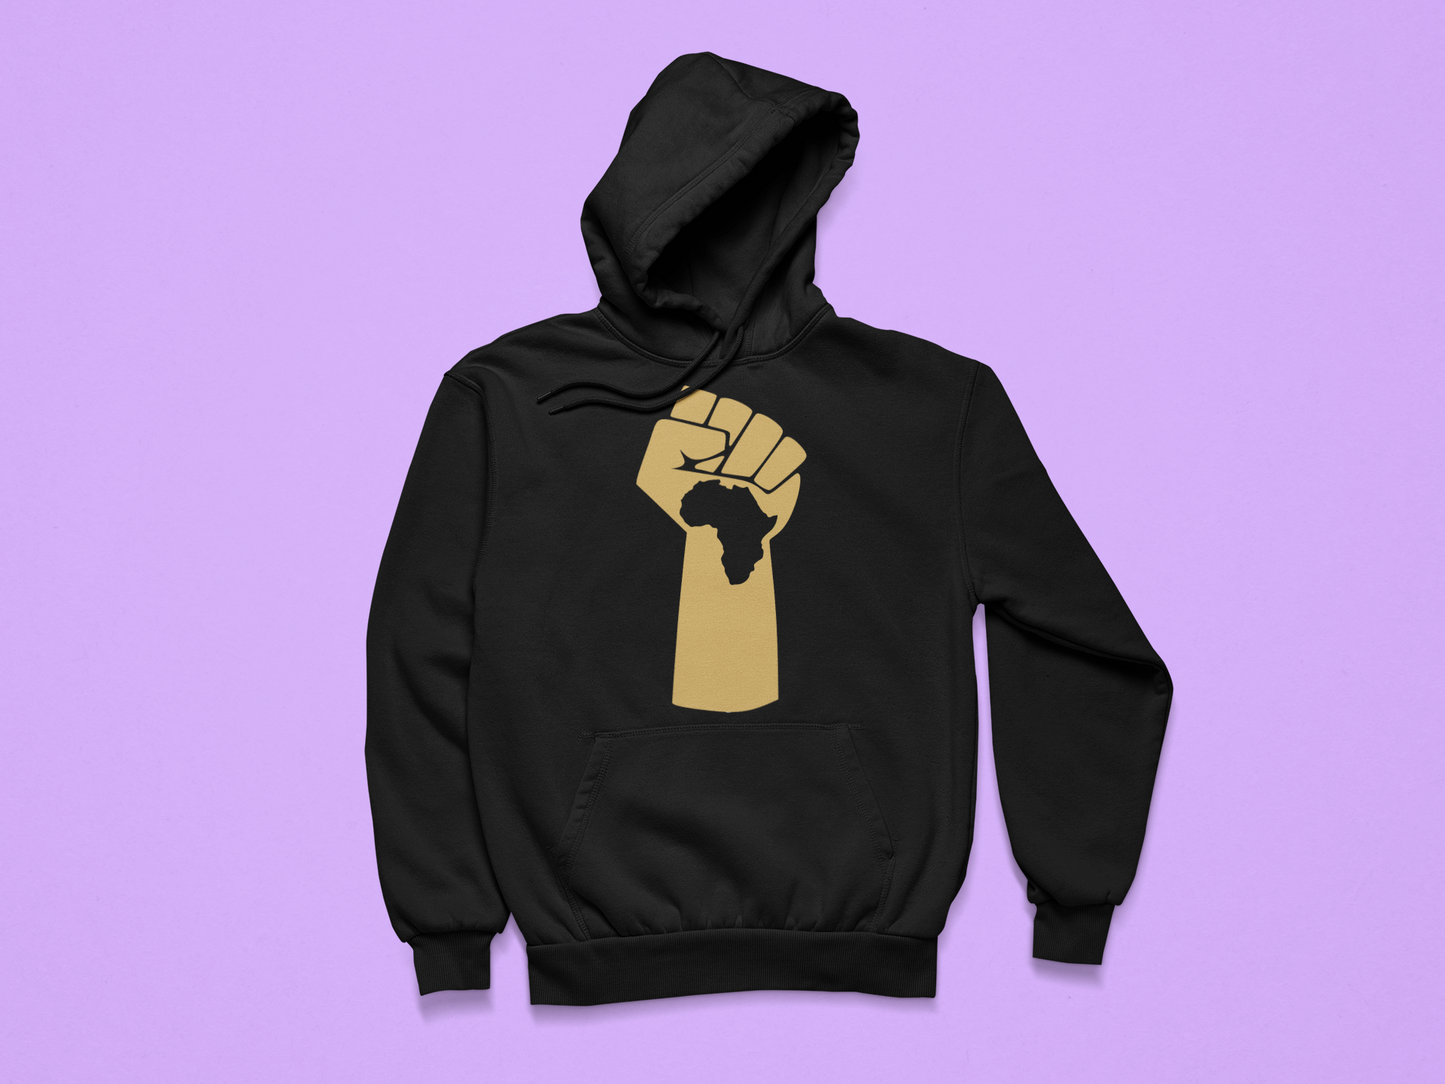 Solidarity "Africa" Hoodie - Gold